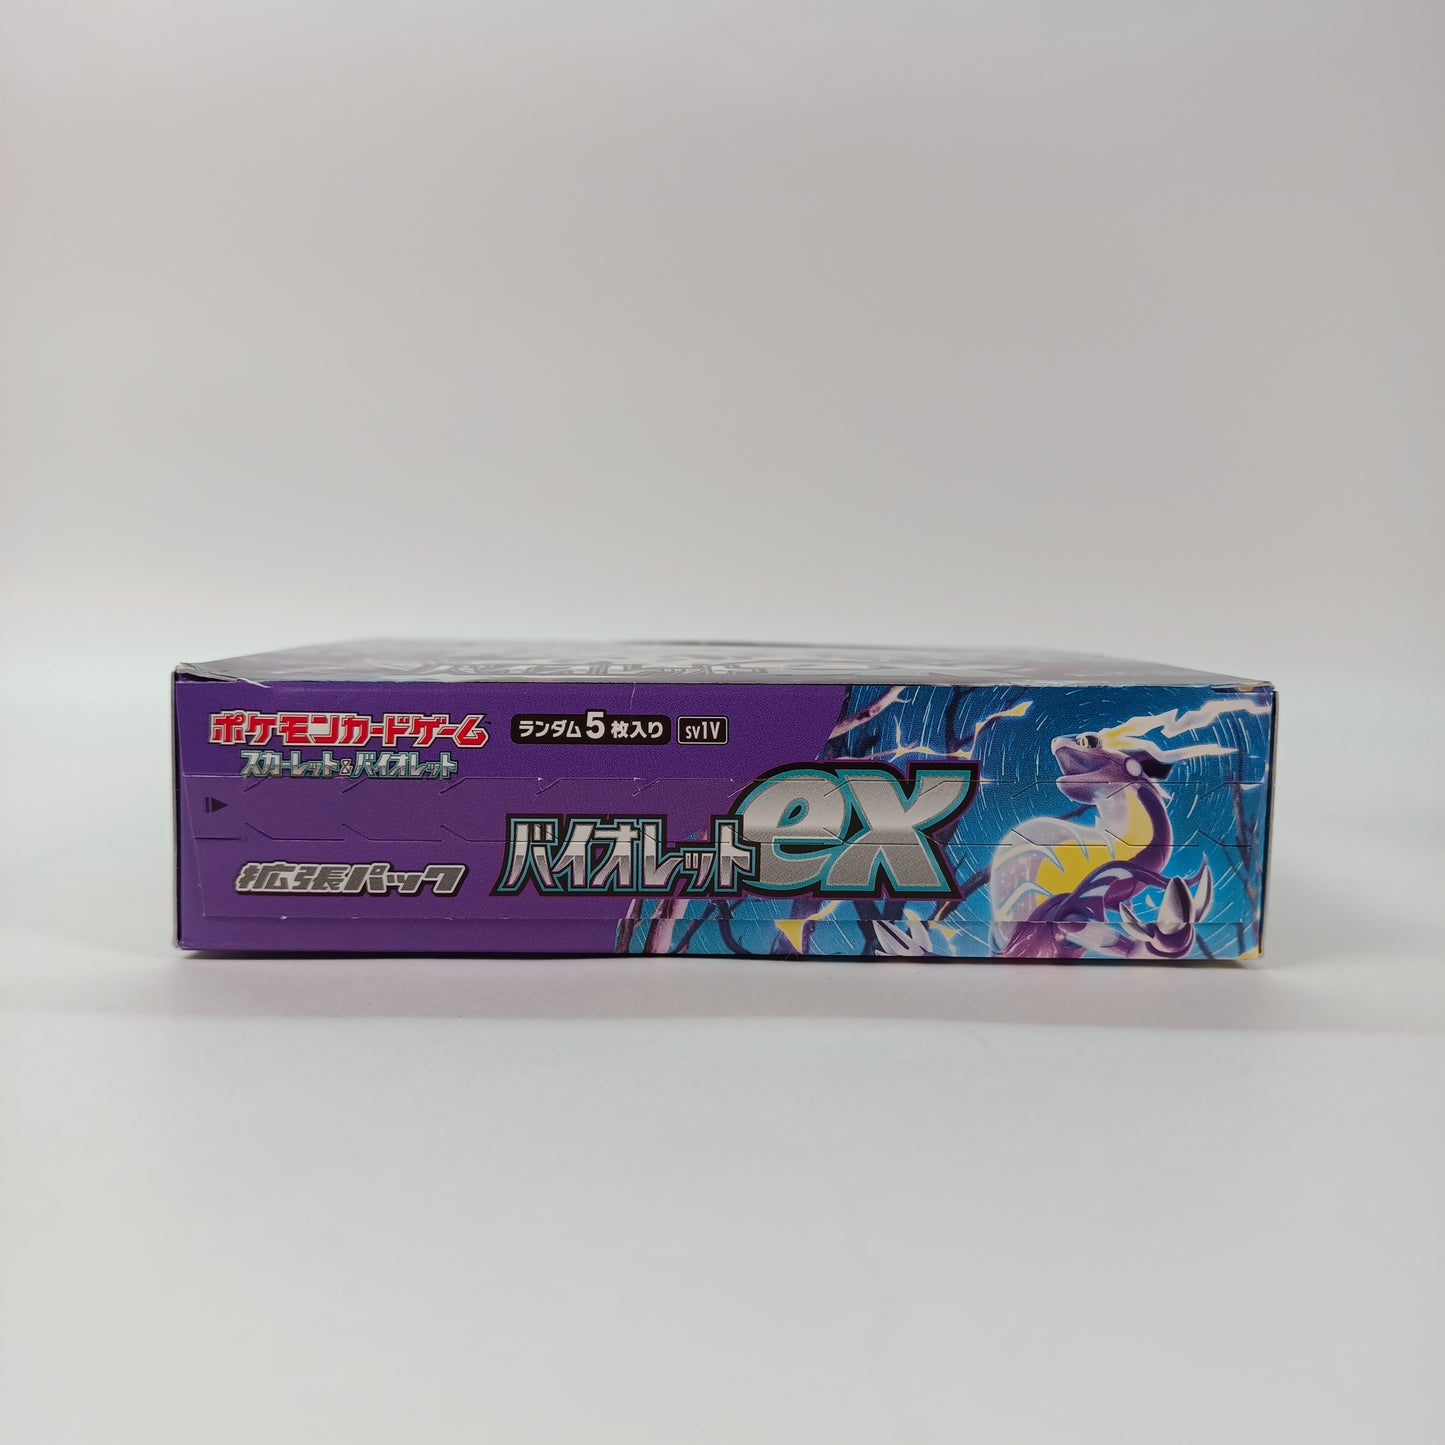 POKEMON CARD GAME VIOLET EX sv1V BOX